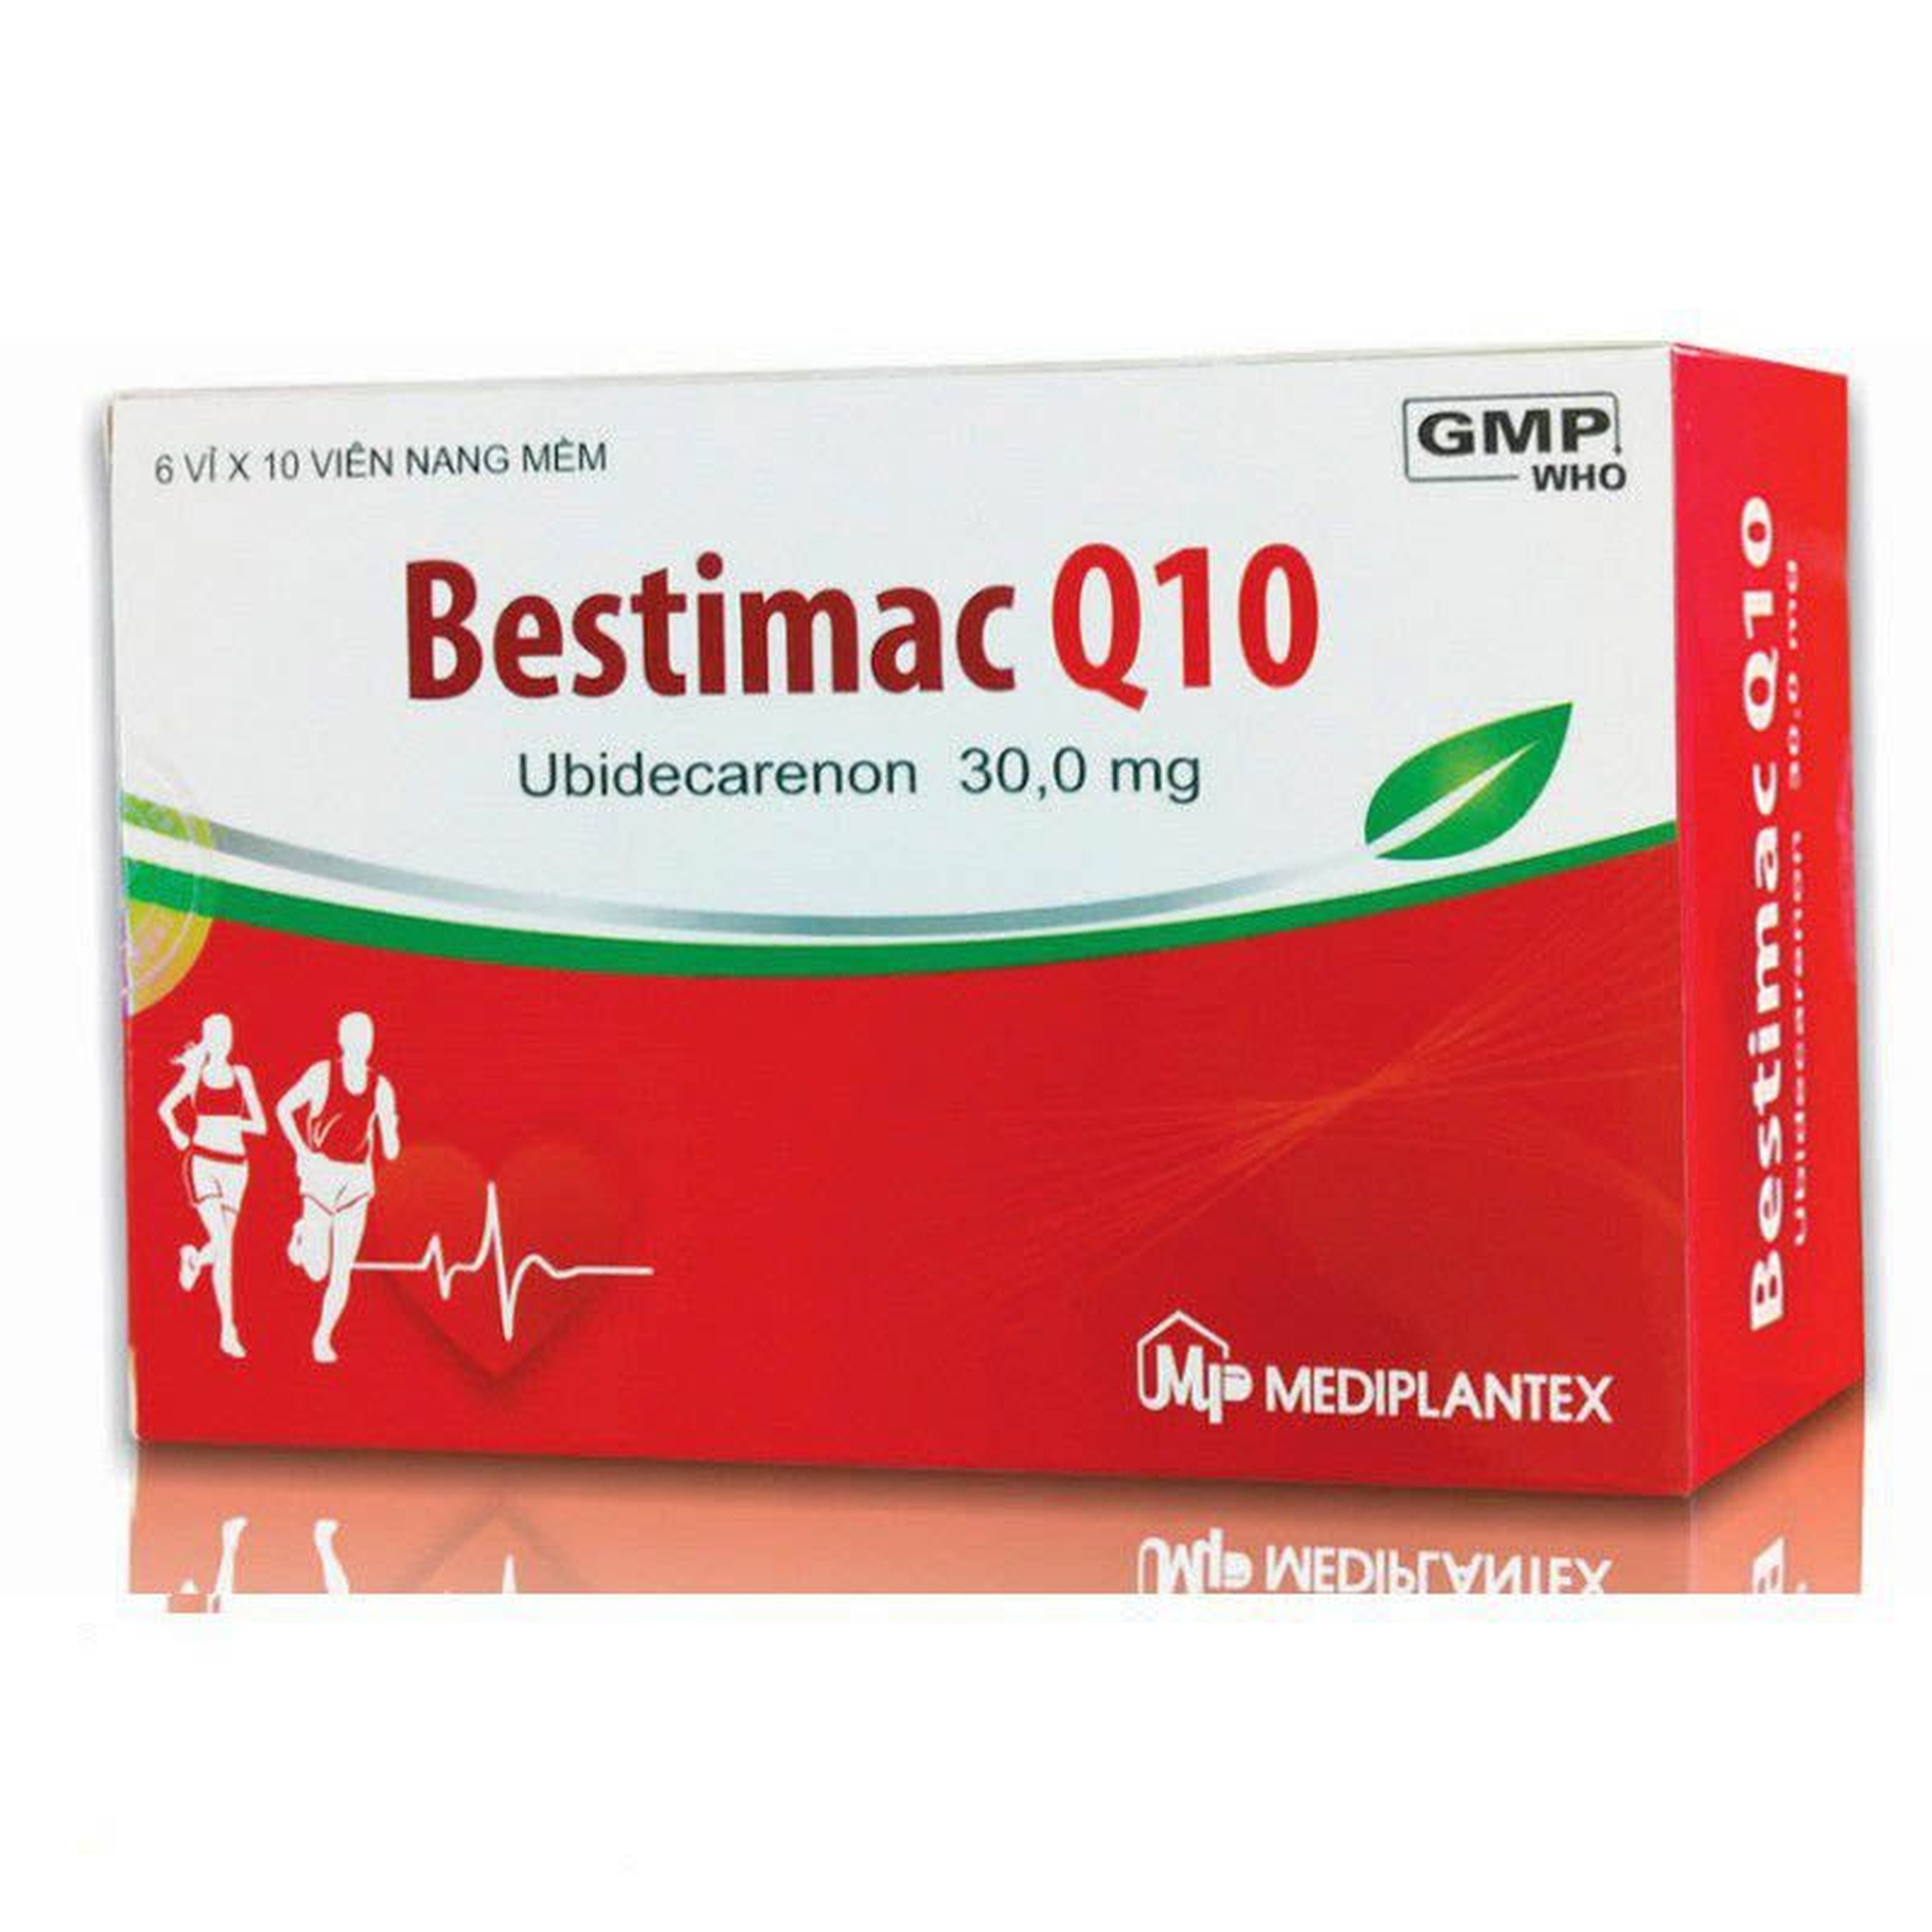 Thuốc Bestimac Q10 30mg Mediplantex điều trị tăng cholesterol máu, suy tim sung huyết (6 vỉ x 10 viên)